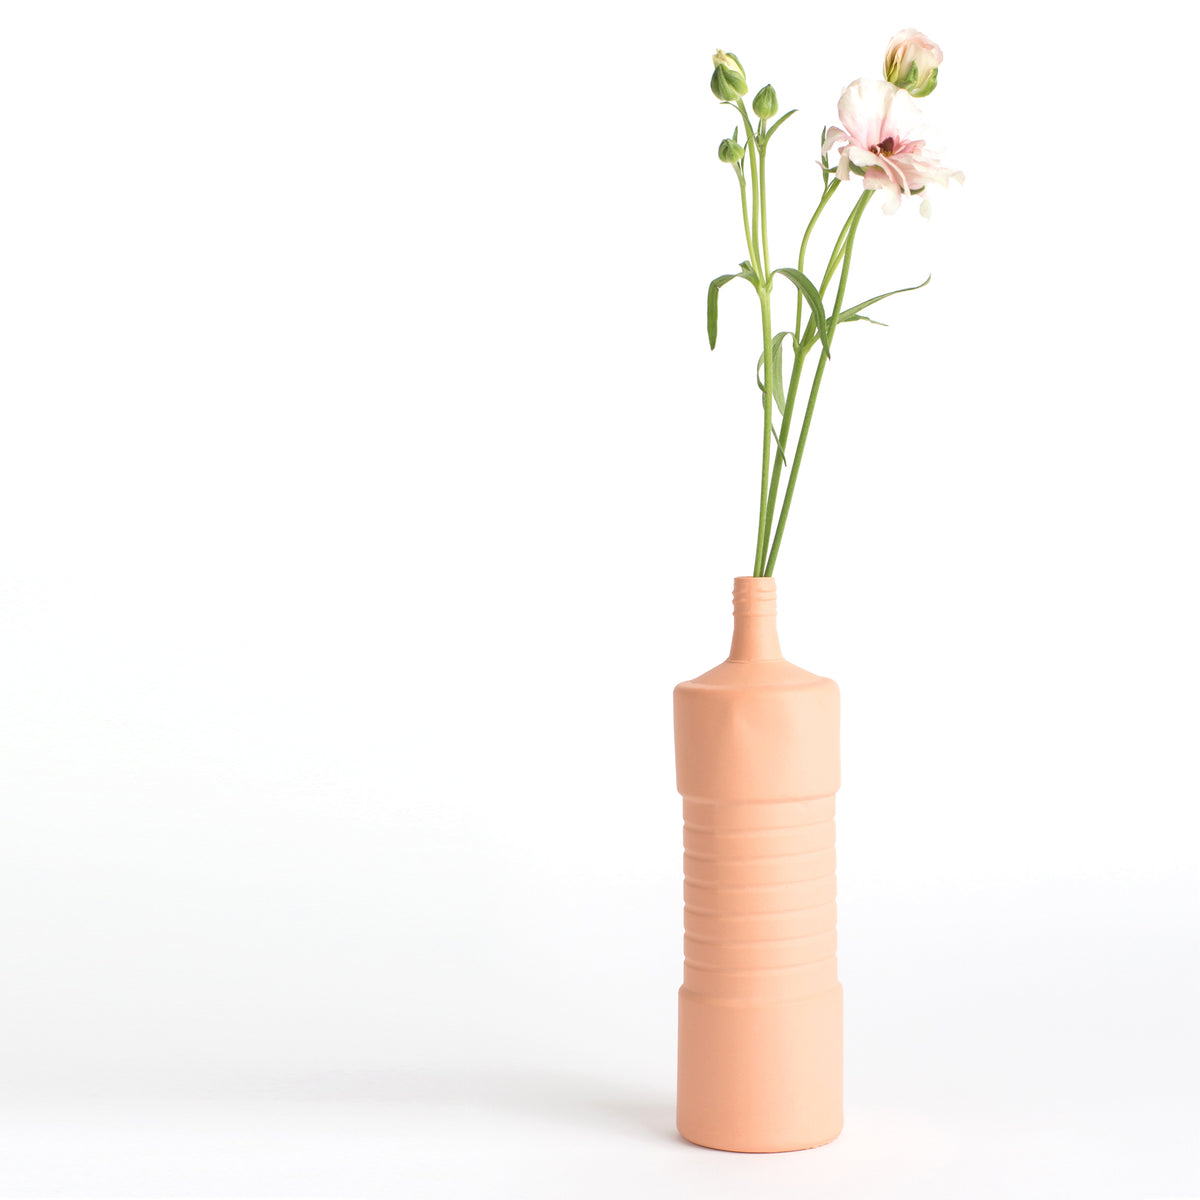 Porzellan-Vase #5 von Foekje Fleur bei Wilhelm die 3.